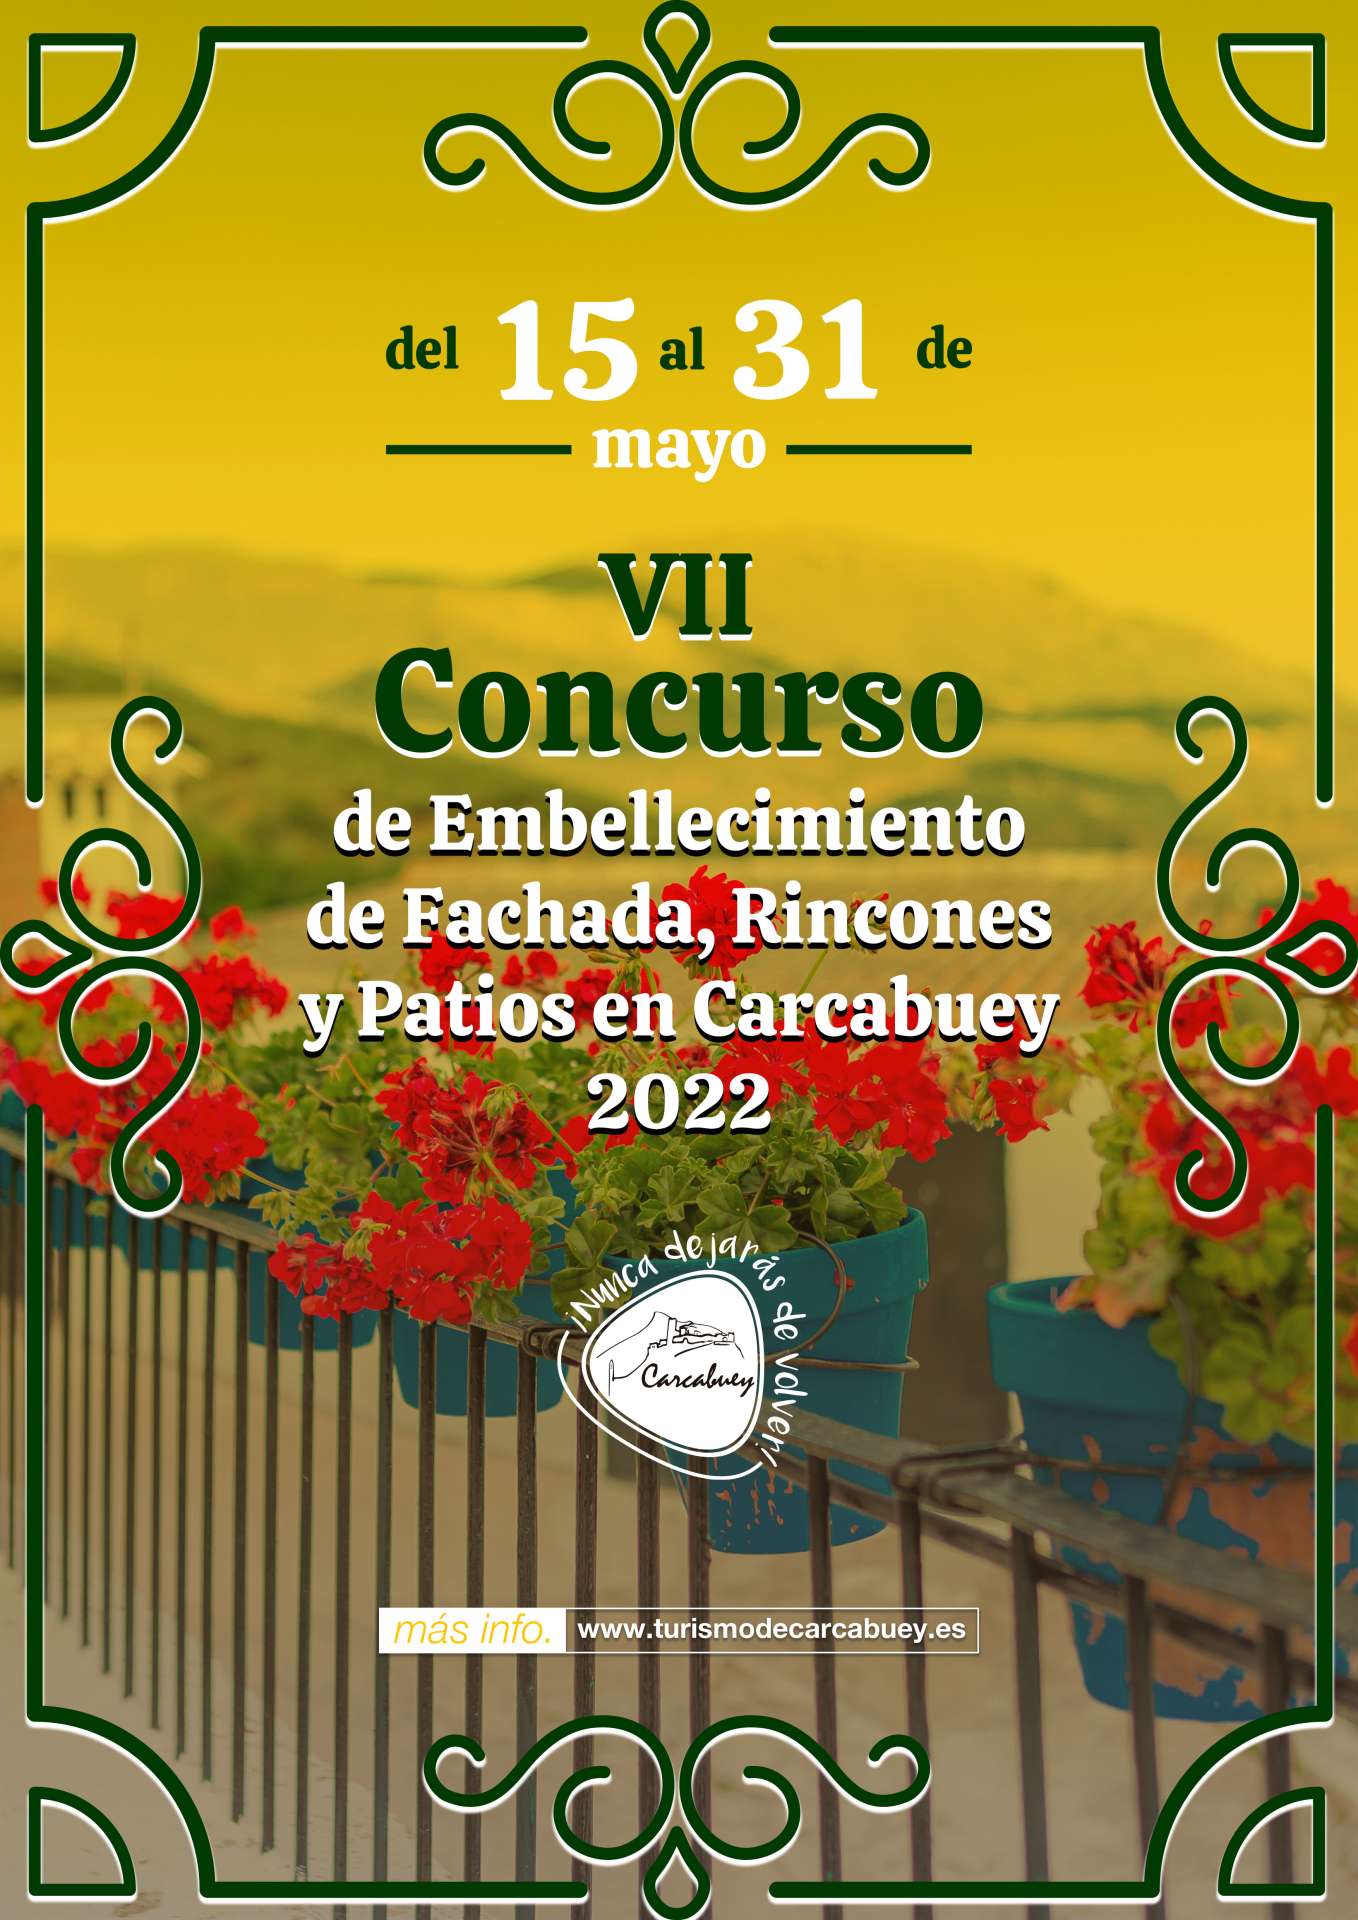 VII Concurso de Embellecimiento de Fachada, Rincones y Patios en Carcabuey 2022